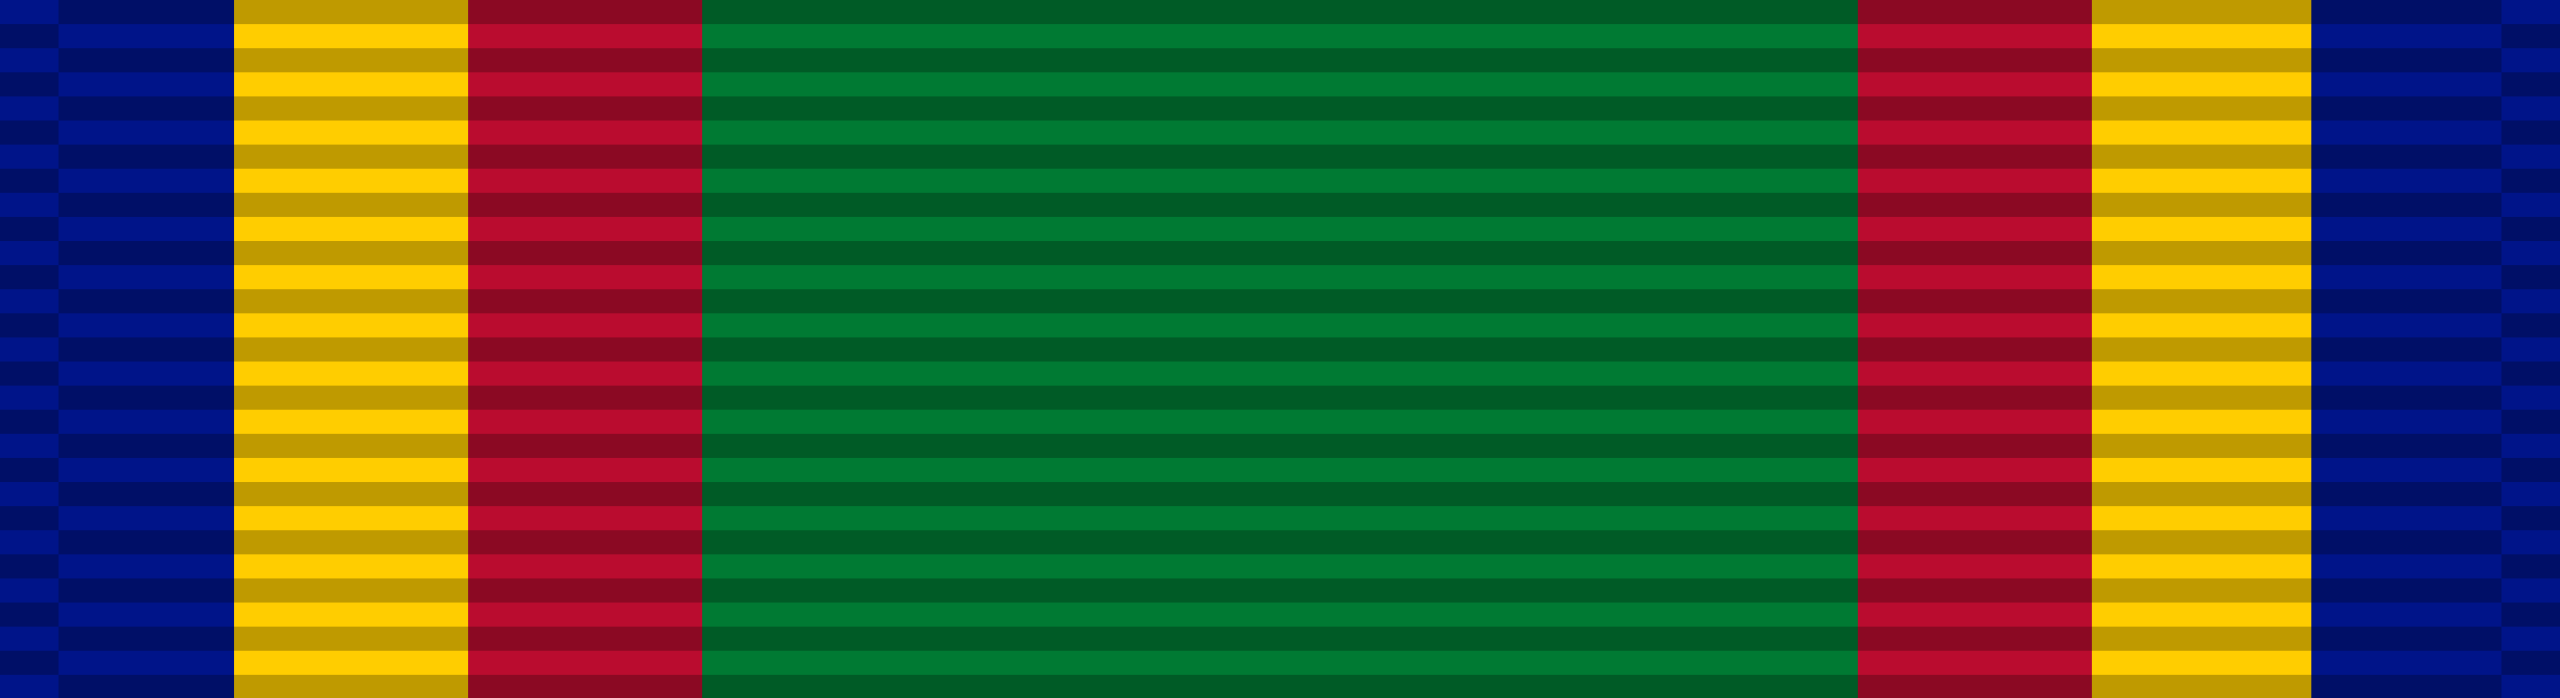 Navy Unit Commendation